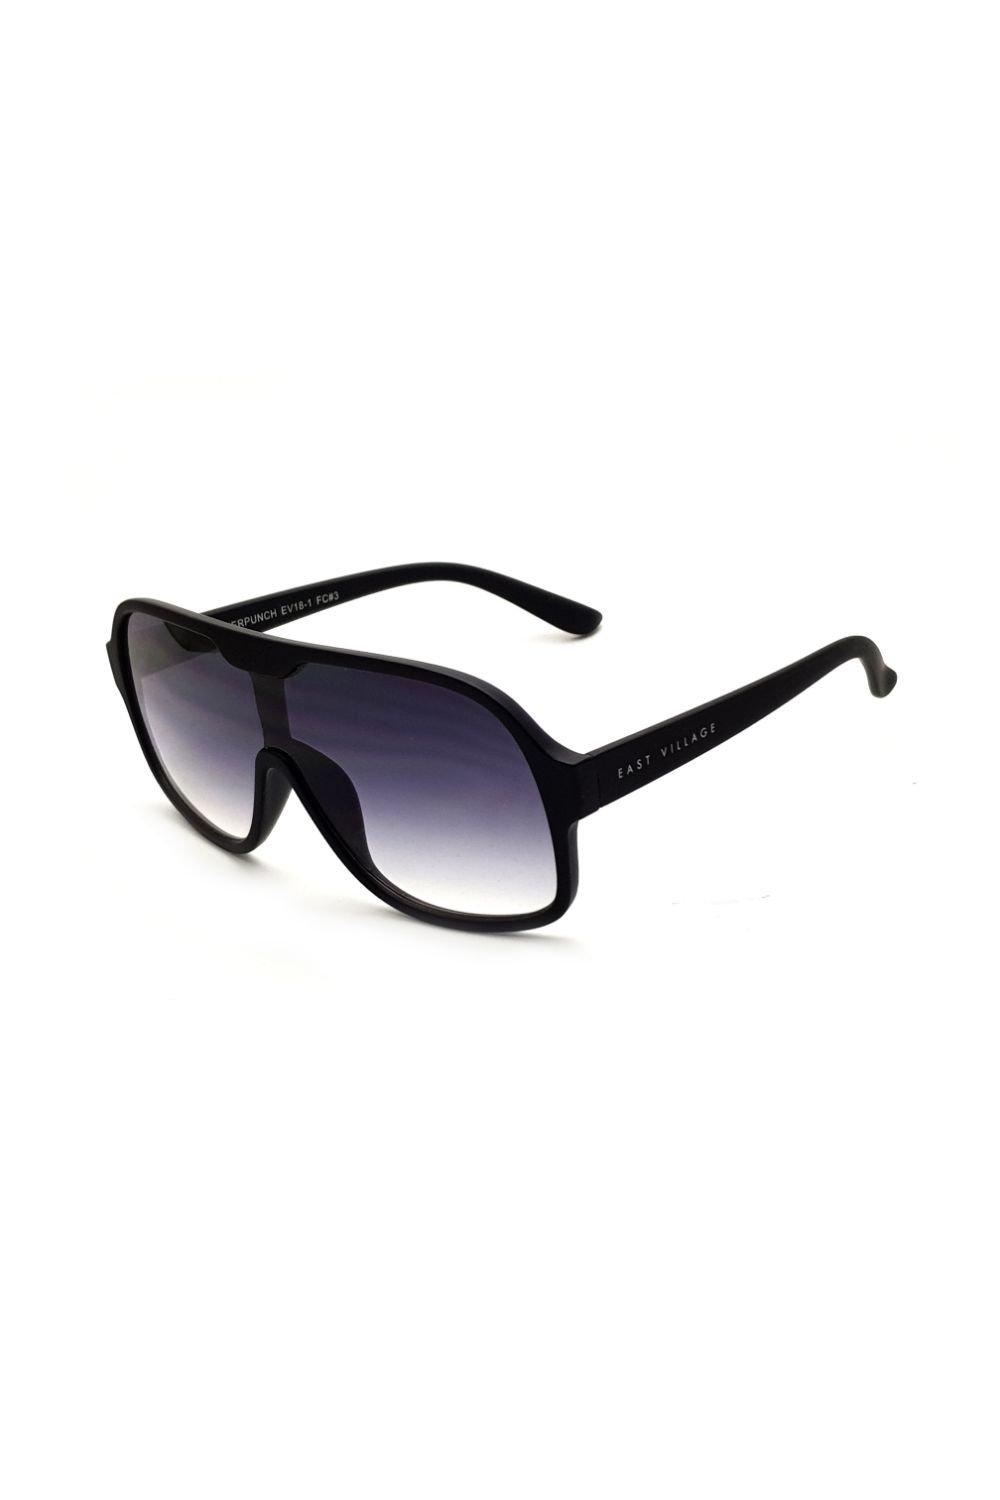 круглые солнцезащитные очки freeman east village синий Солнцезащитные очки Suckerpunch East Village, черный